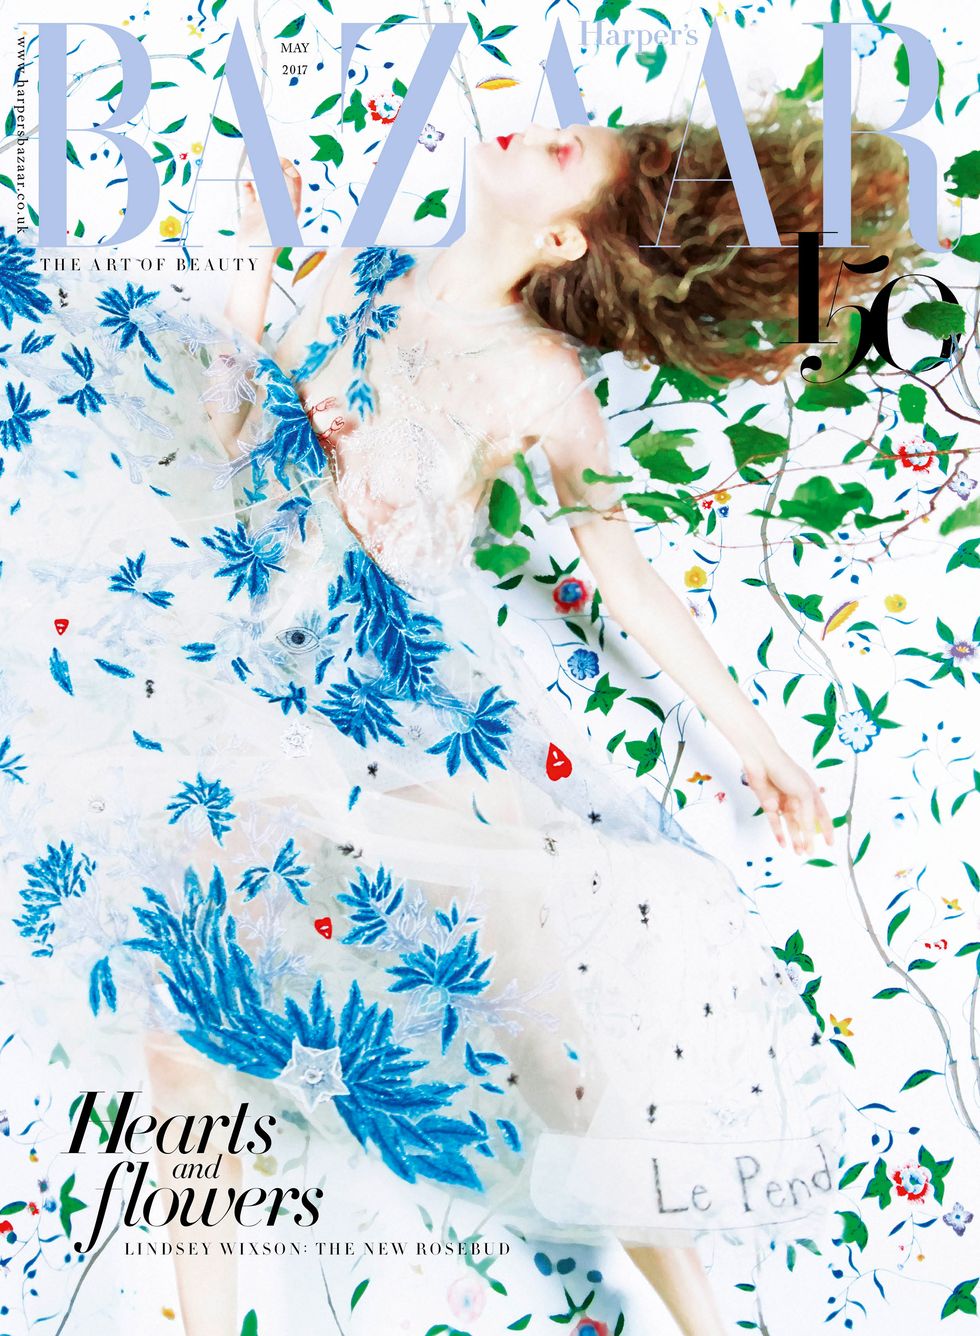 May subs cover of Harper's Bazaar